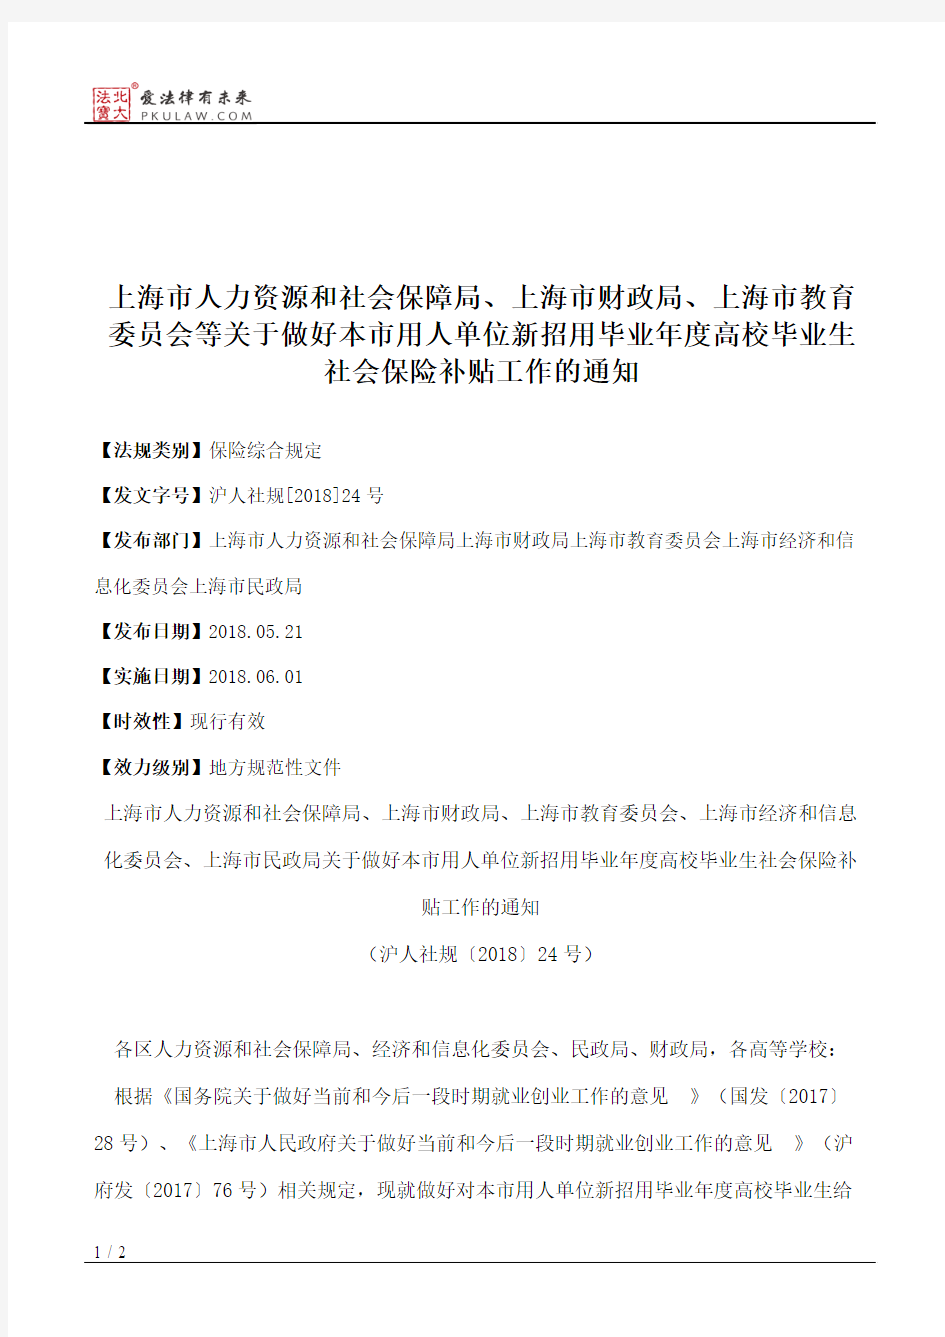 上海市人力资源和社会保障局、上海市财政局、上海市教育委员会等